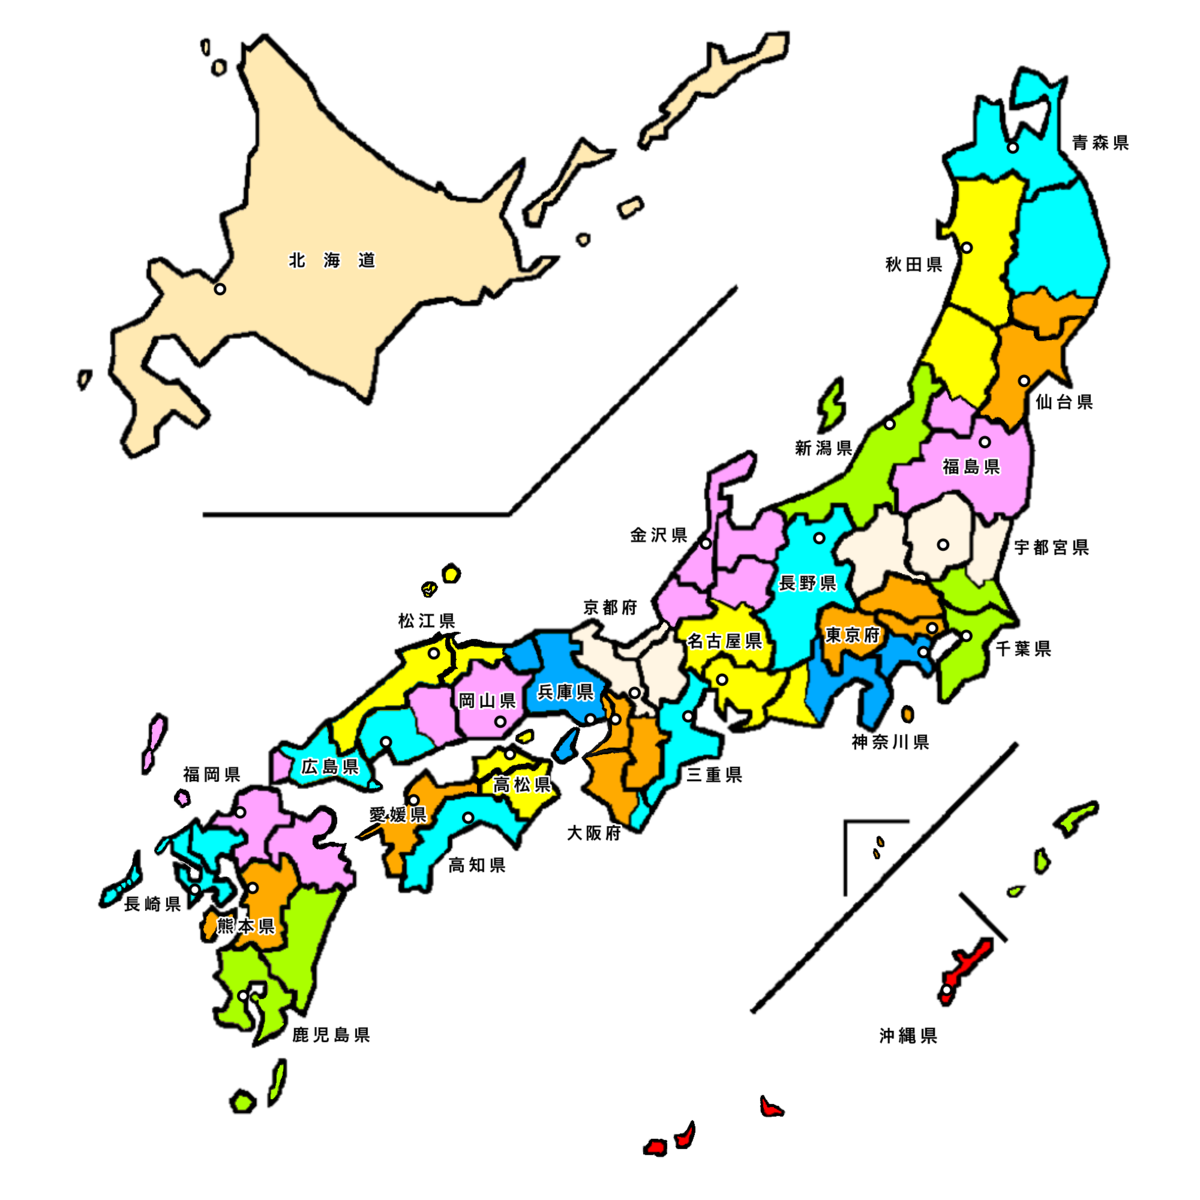 Tận hưởng sự ngọt ngào của Nhật Bản thông qua việc khám phá các tỉnh và thành phố của đất nước này. Như Fukushima, nơi bạn có thể tìm thấy hồ Inawashiro trong thời gian tuyệt đẹp giữa tháng 4 và tháng